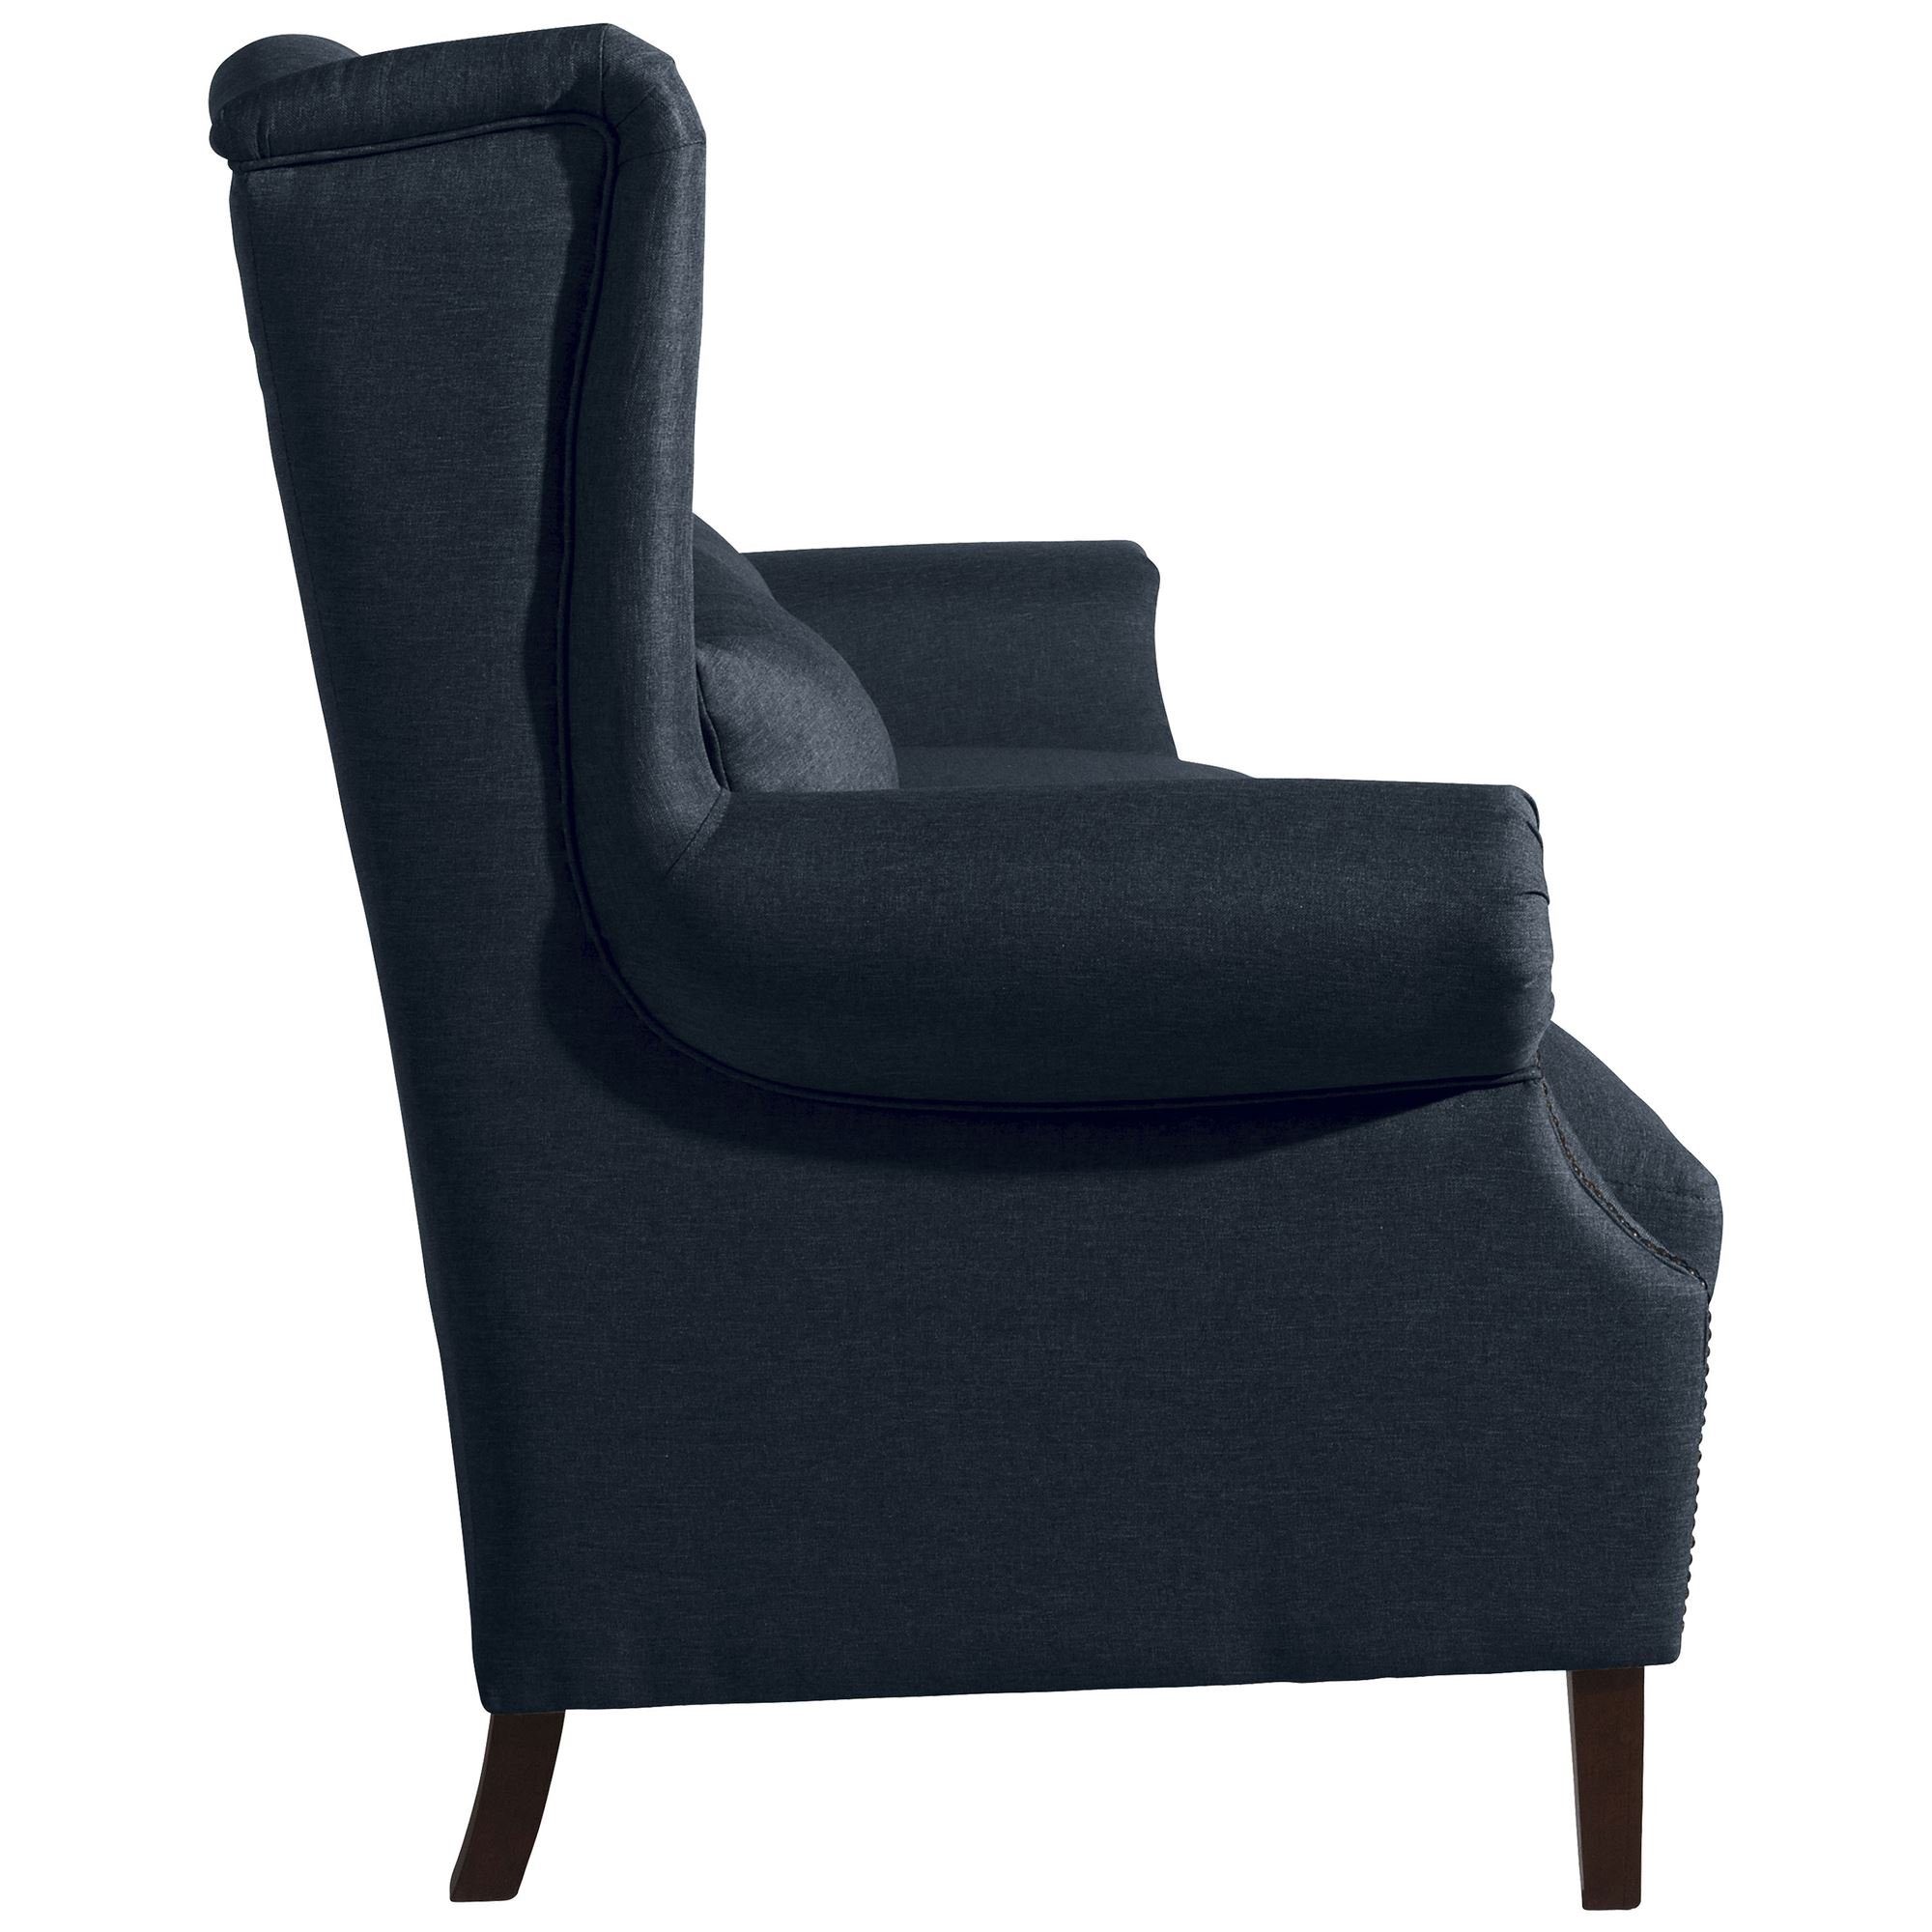 Bezug Sofa 1 Teile, inkl. Kostenlosem aufm 3-Sitzer 58 (2-geteilt) Kandy Sitz Versand Sofa Flachgewebe, Sparpreis hochwertig verarbeitet,bequemer Kessel